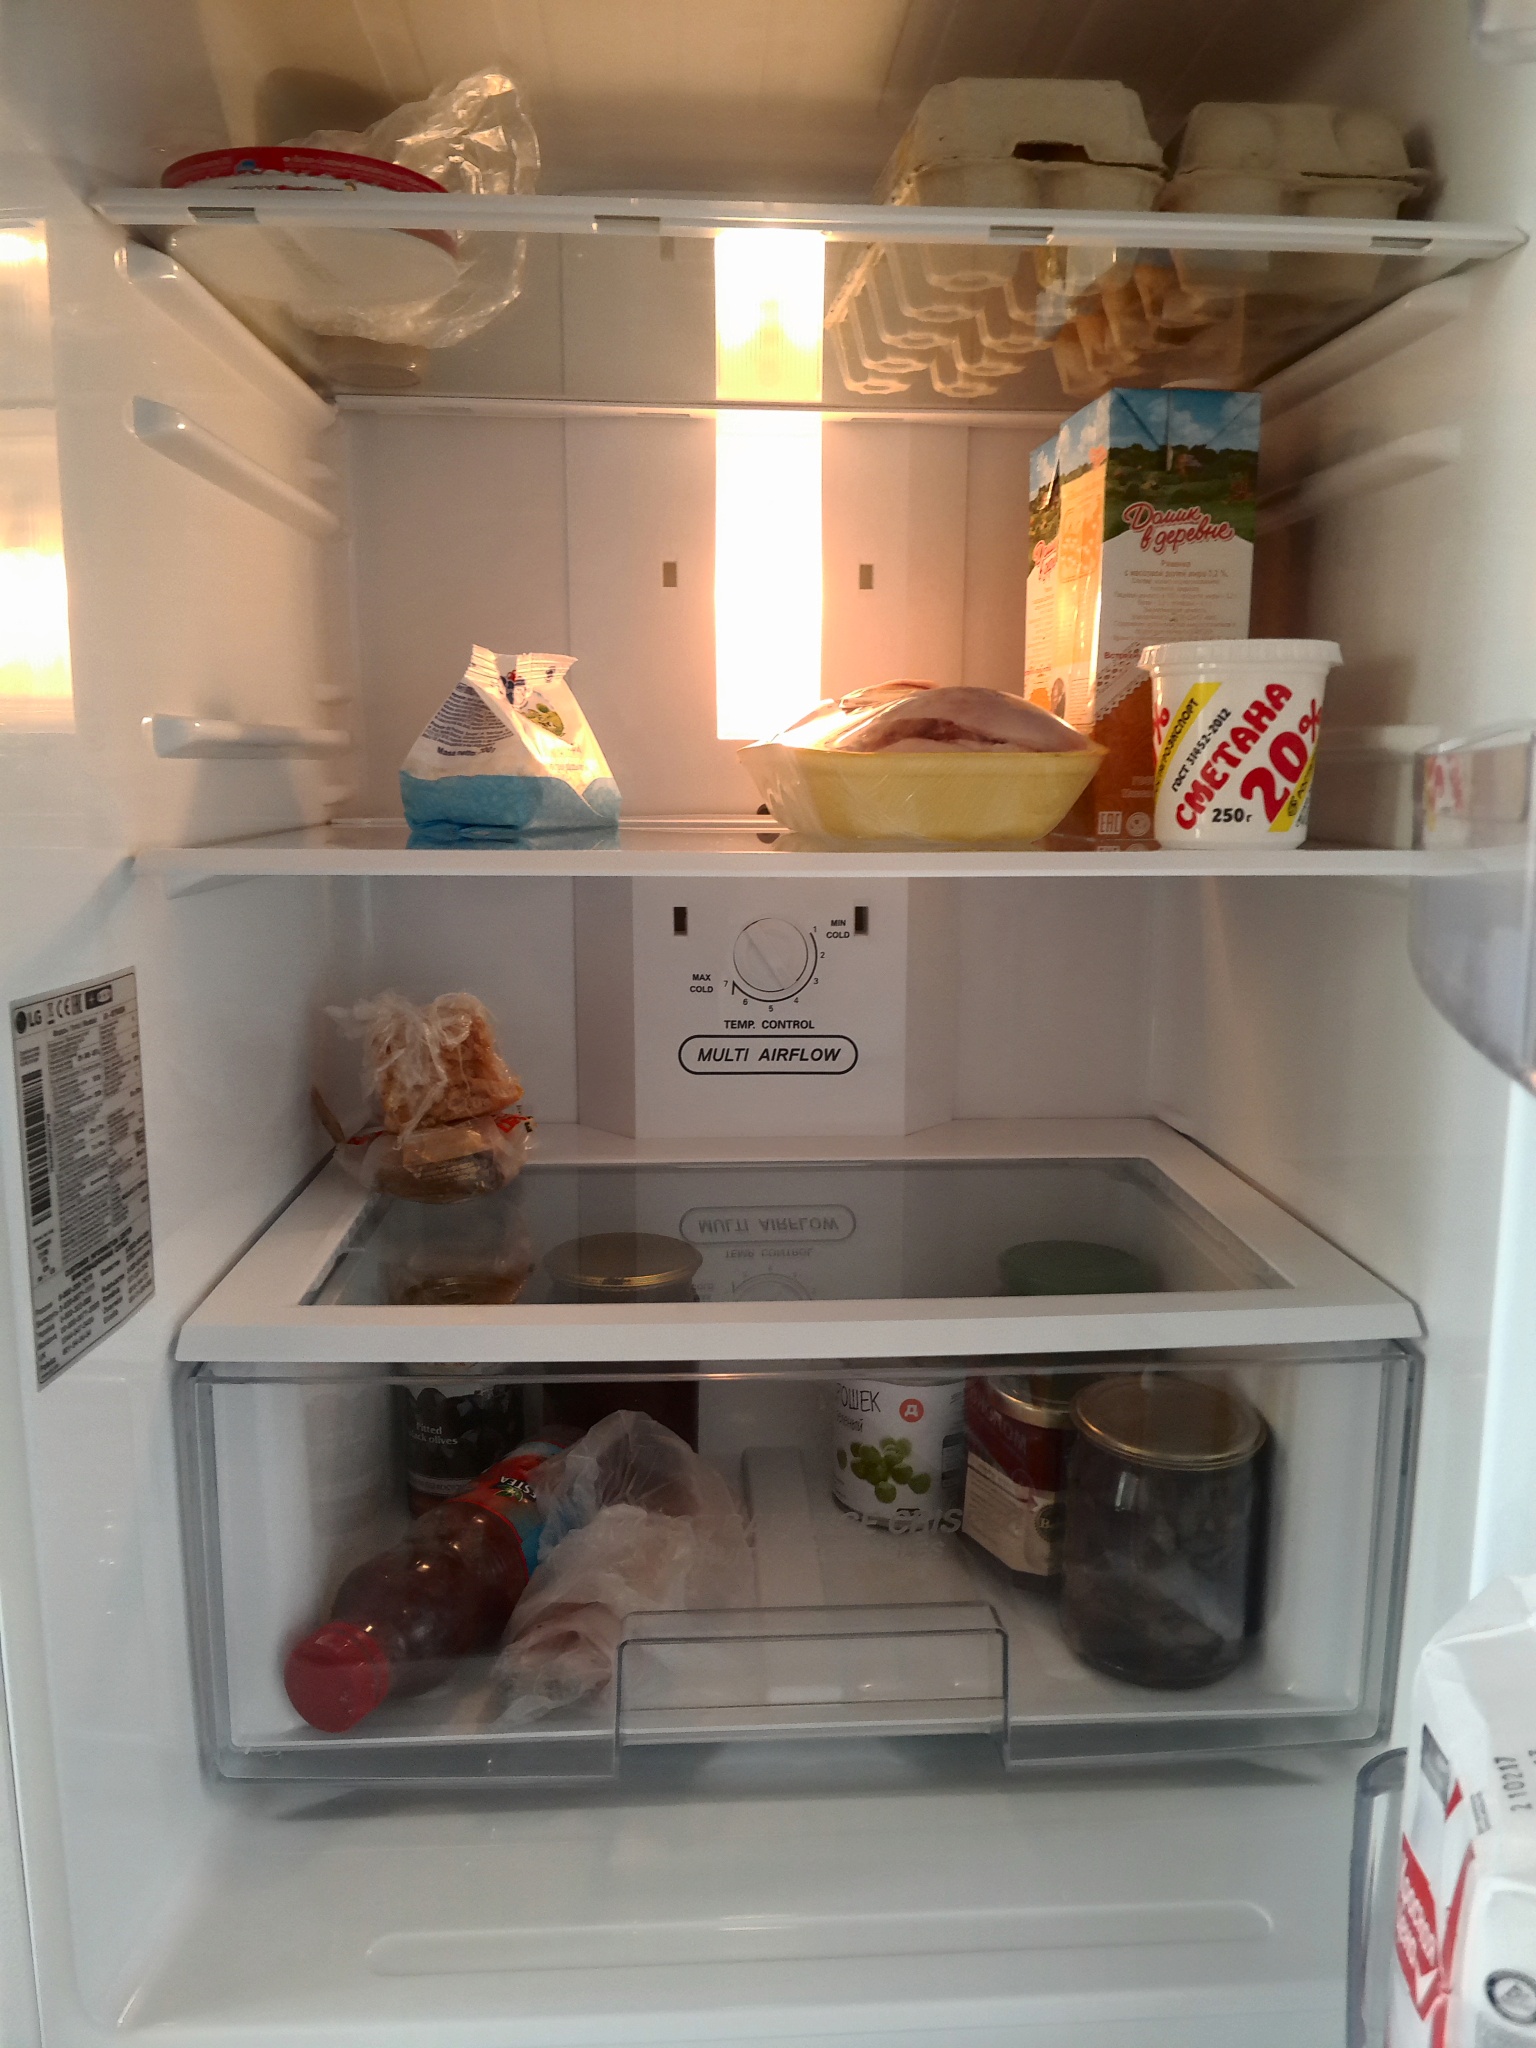 Удобное расположение полок в холодильнике